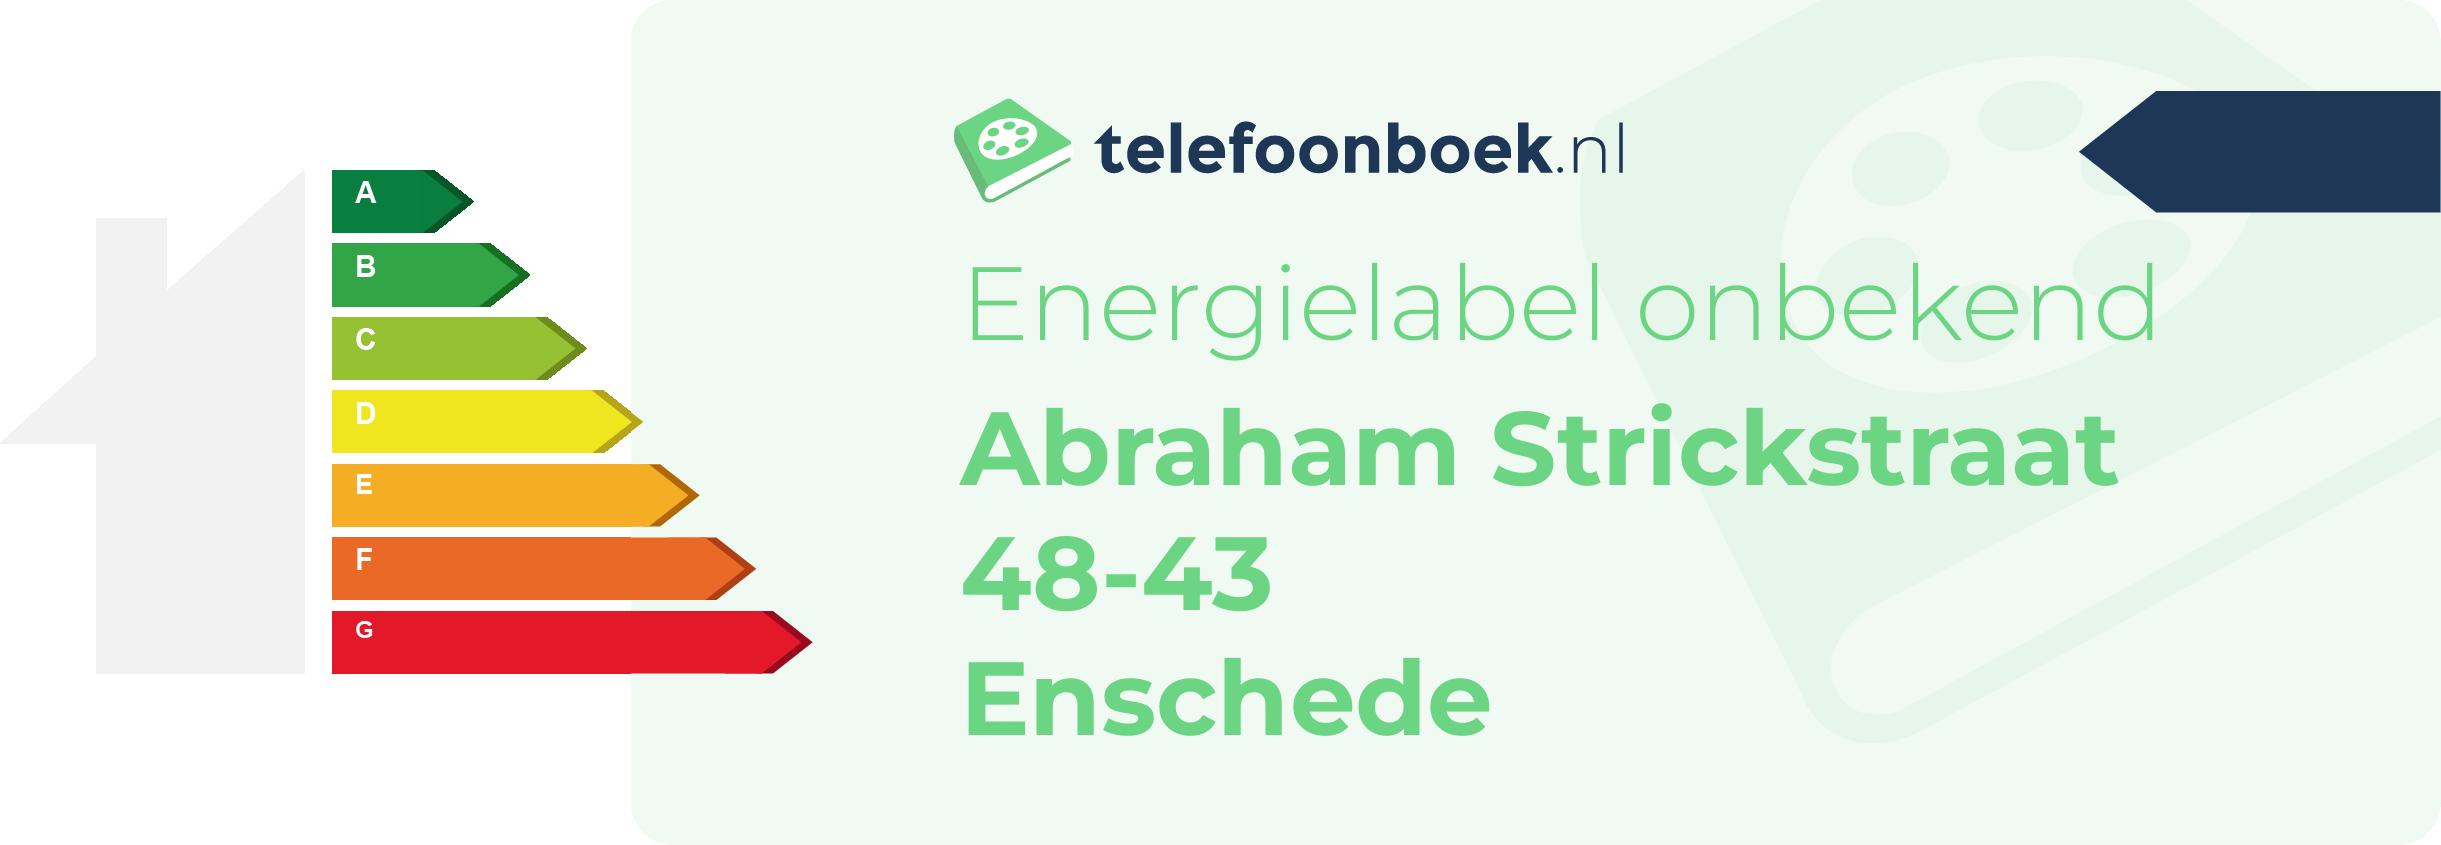 Energielabel Abraham Strickstraat 48-43 Enschede